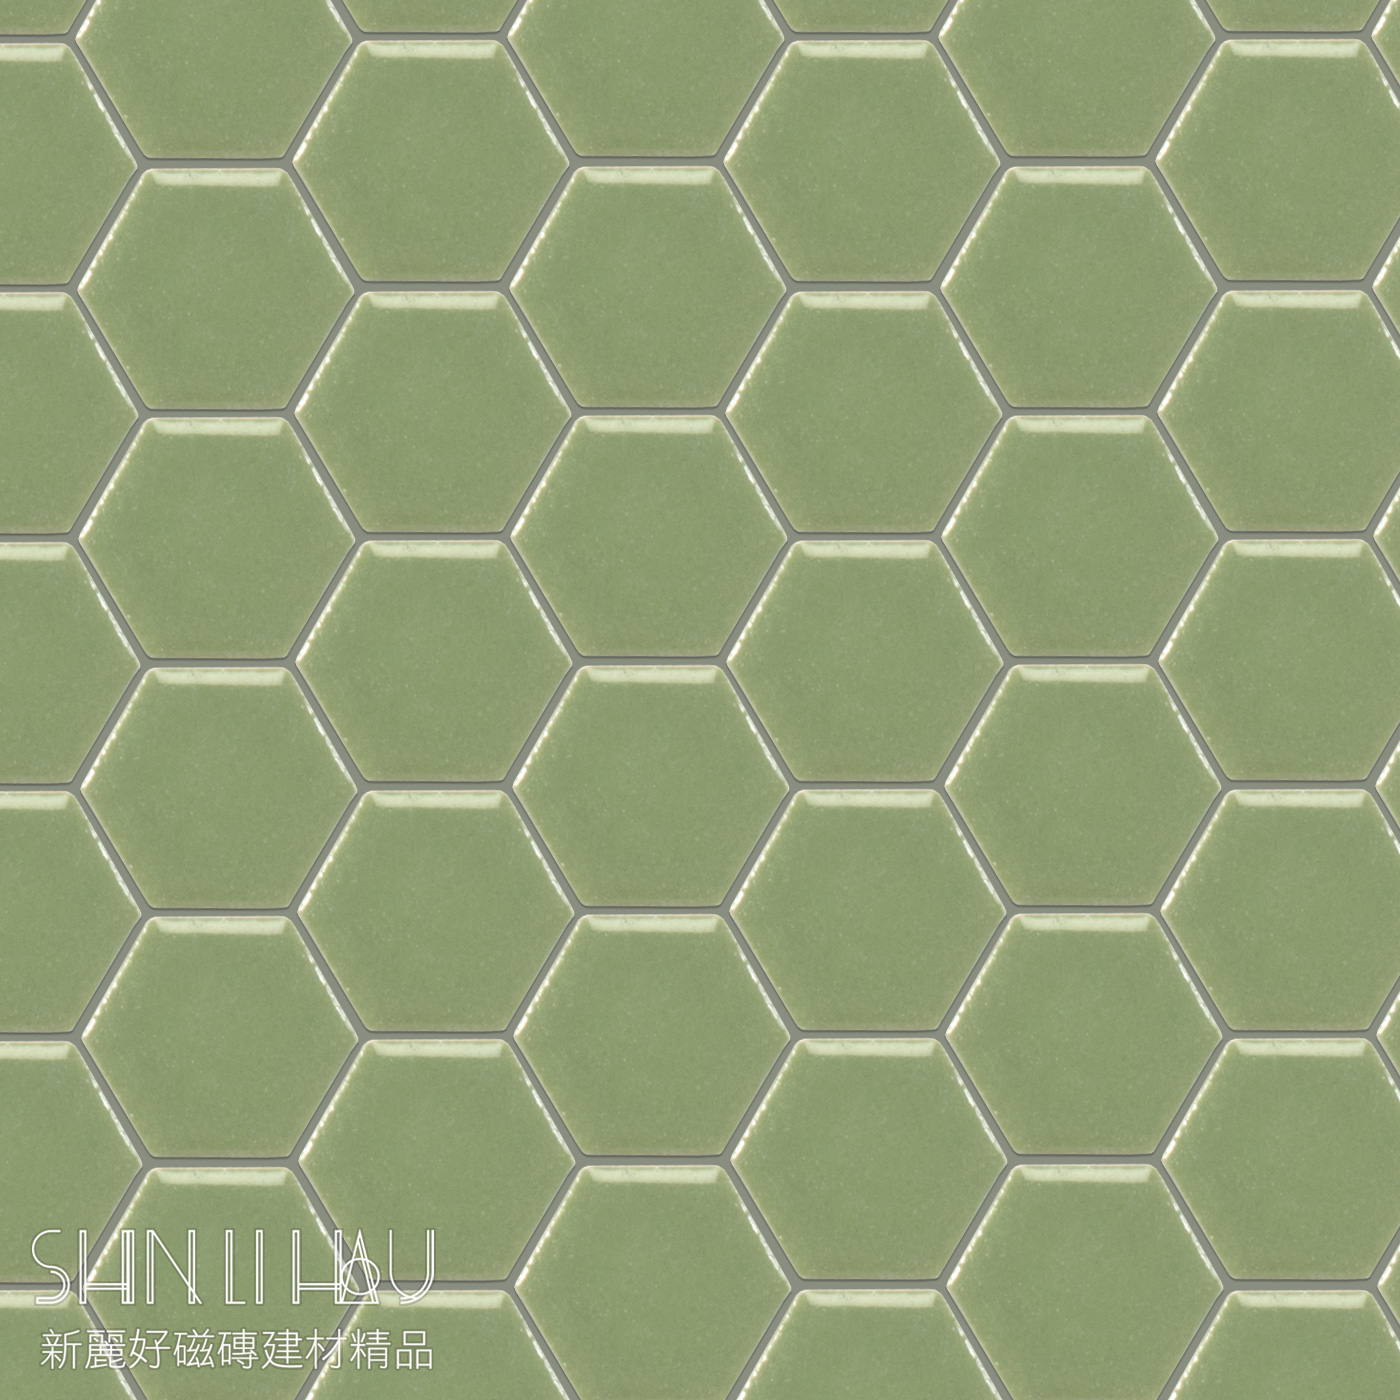 彩石六角形馬賽克(12X14顆/張) - 6705A765